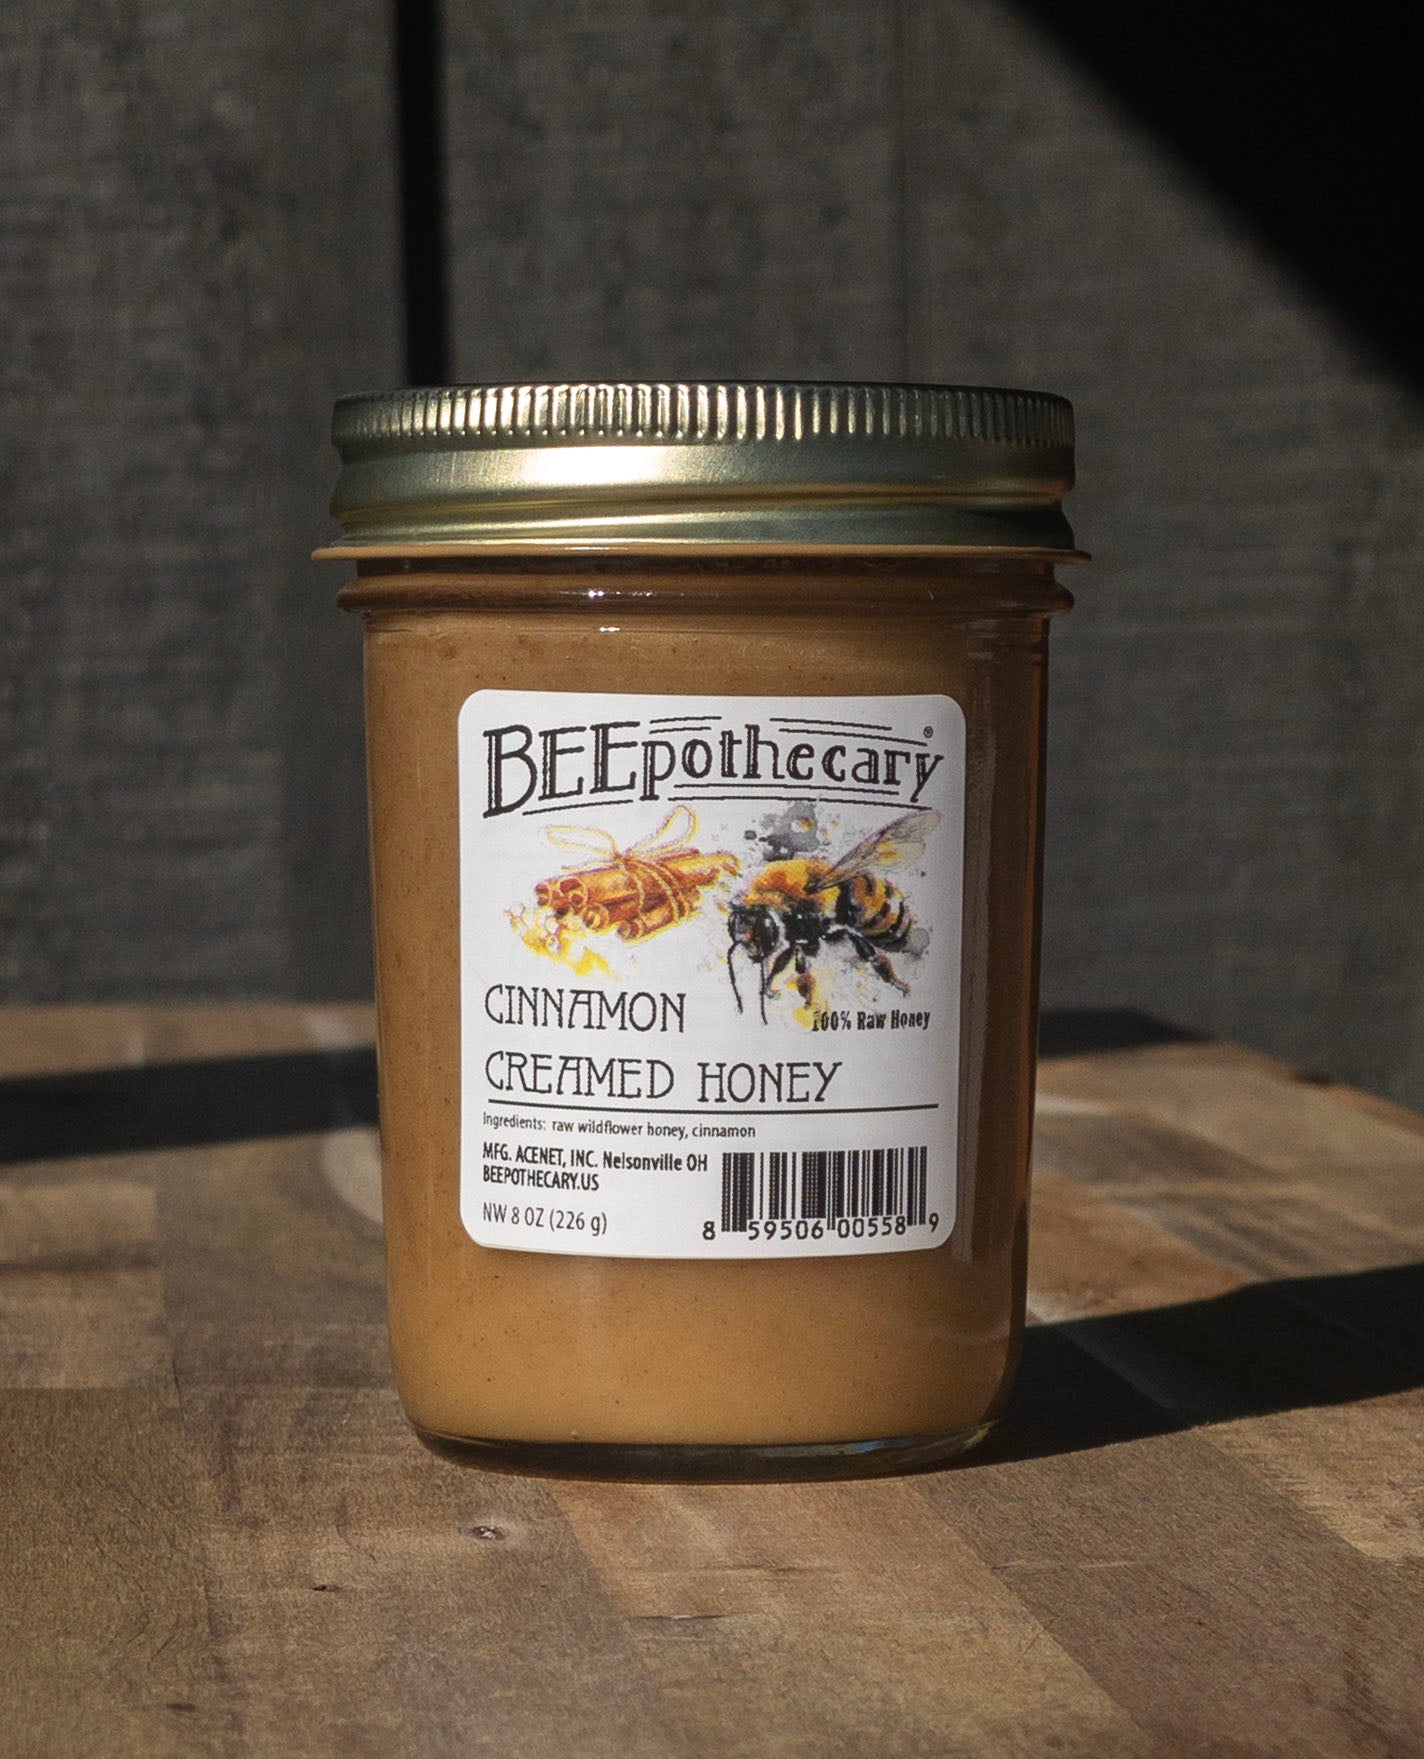 Cinnamon Creamed Honey in an 8oz jar with a twist off lid.